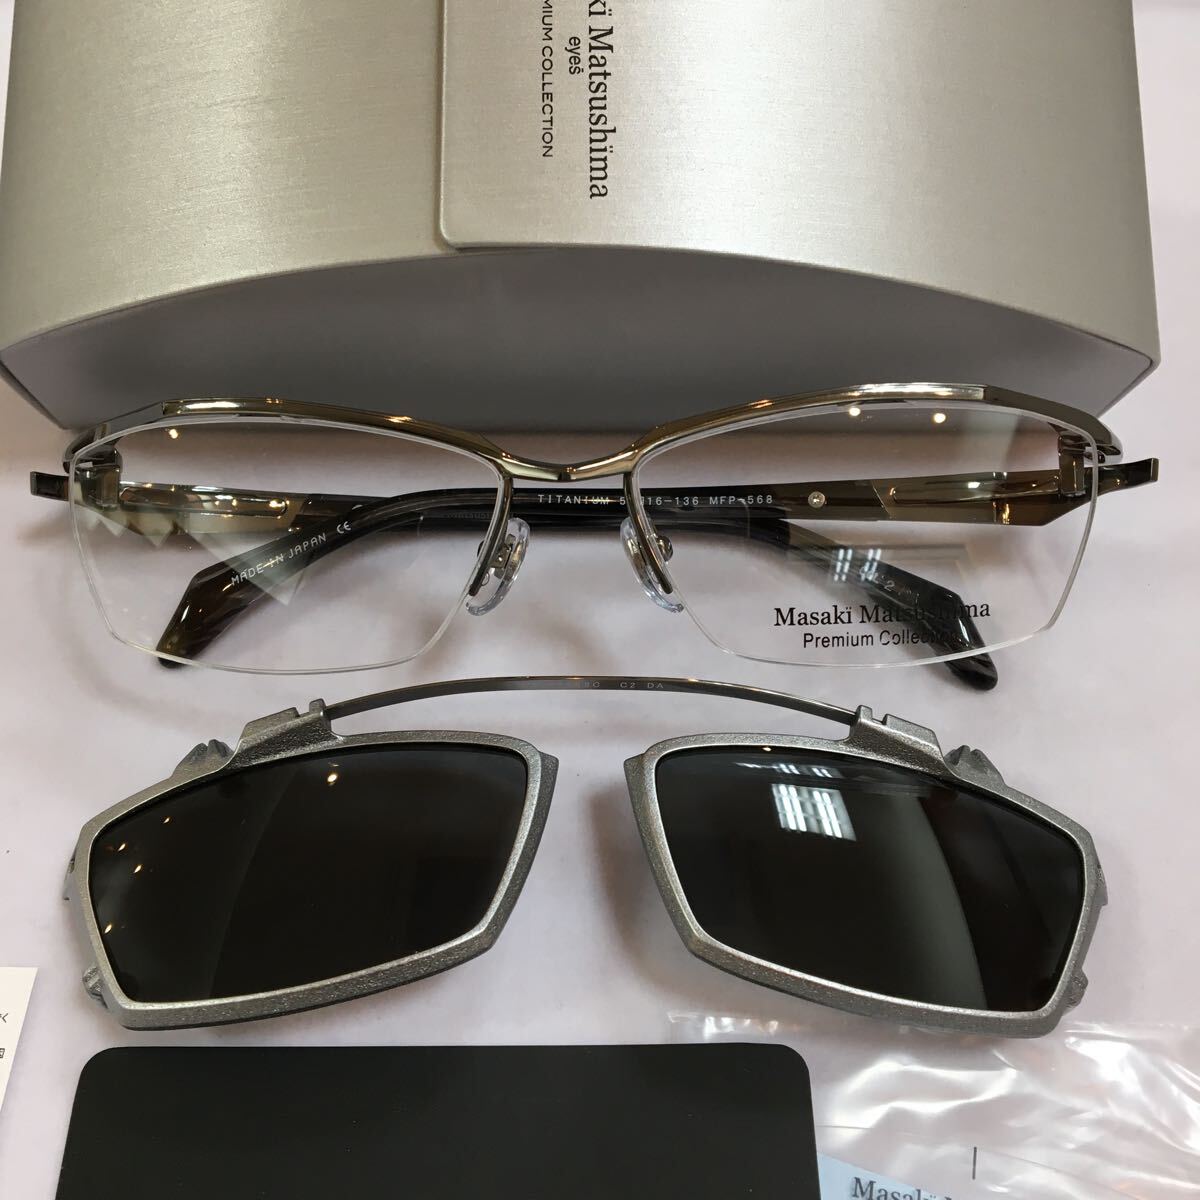 限定モデル 限定品 Masaki Matsushima マサキマツシマ プレミアムコレクション MFP-568 MADE IN JAPAN 高品質 日本製 メガネ 眼鏡 MFP 568_画像5